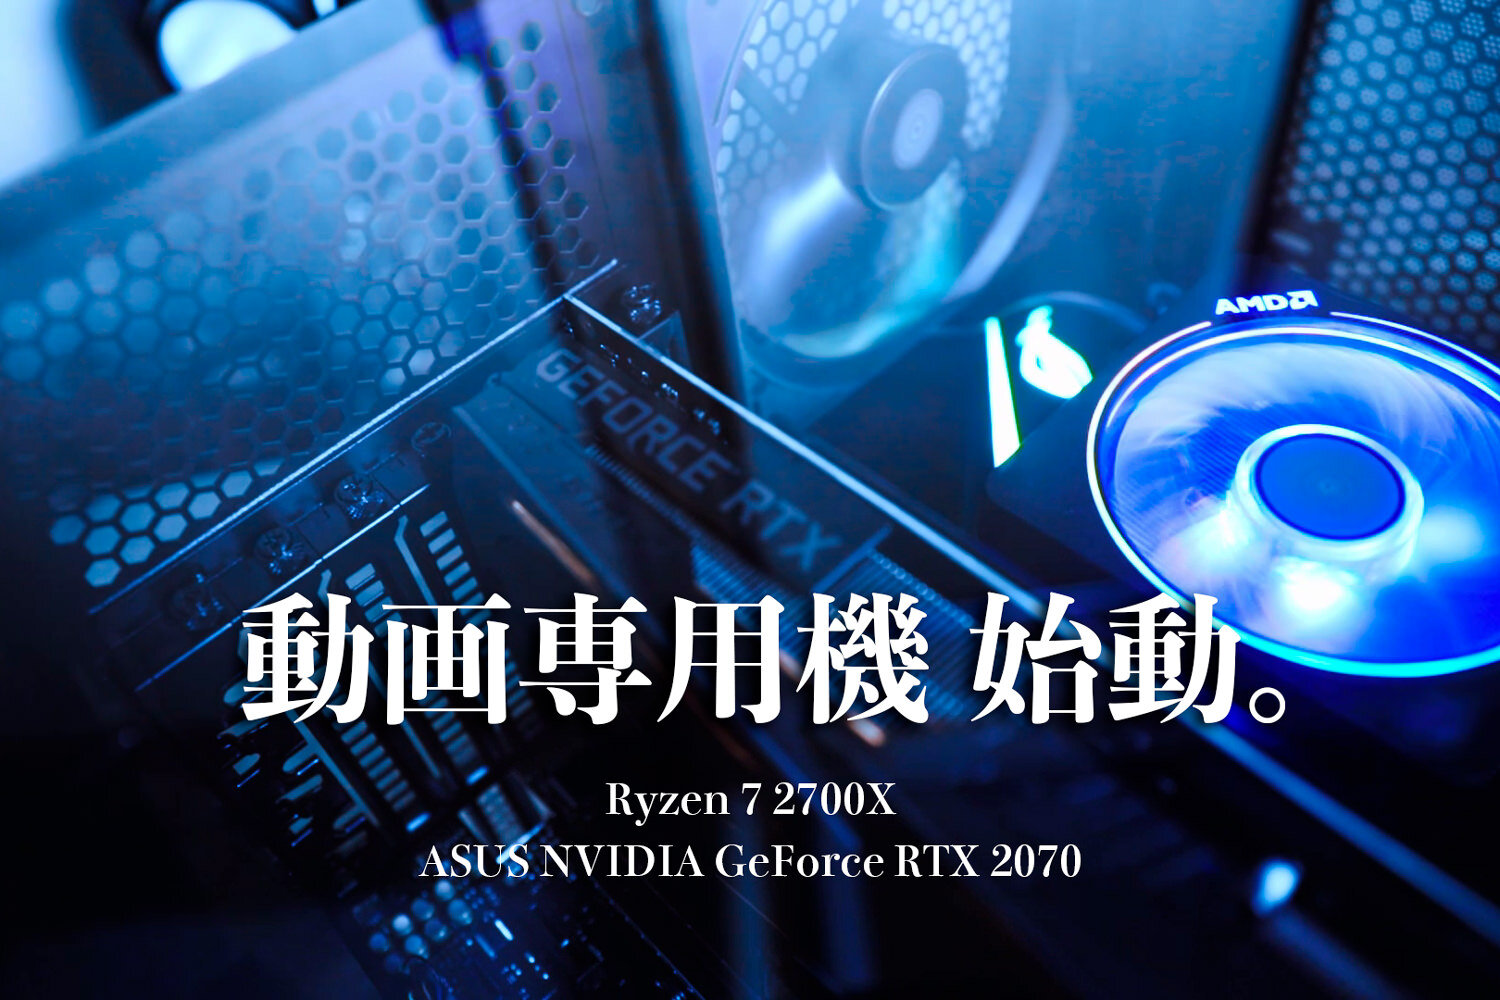 動画制作機、Ryzen 7 2700XとRTX2070のPCを導入 パーツ構成の紹介